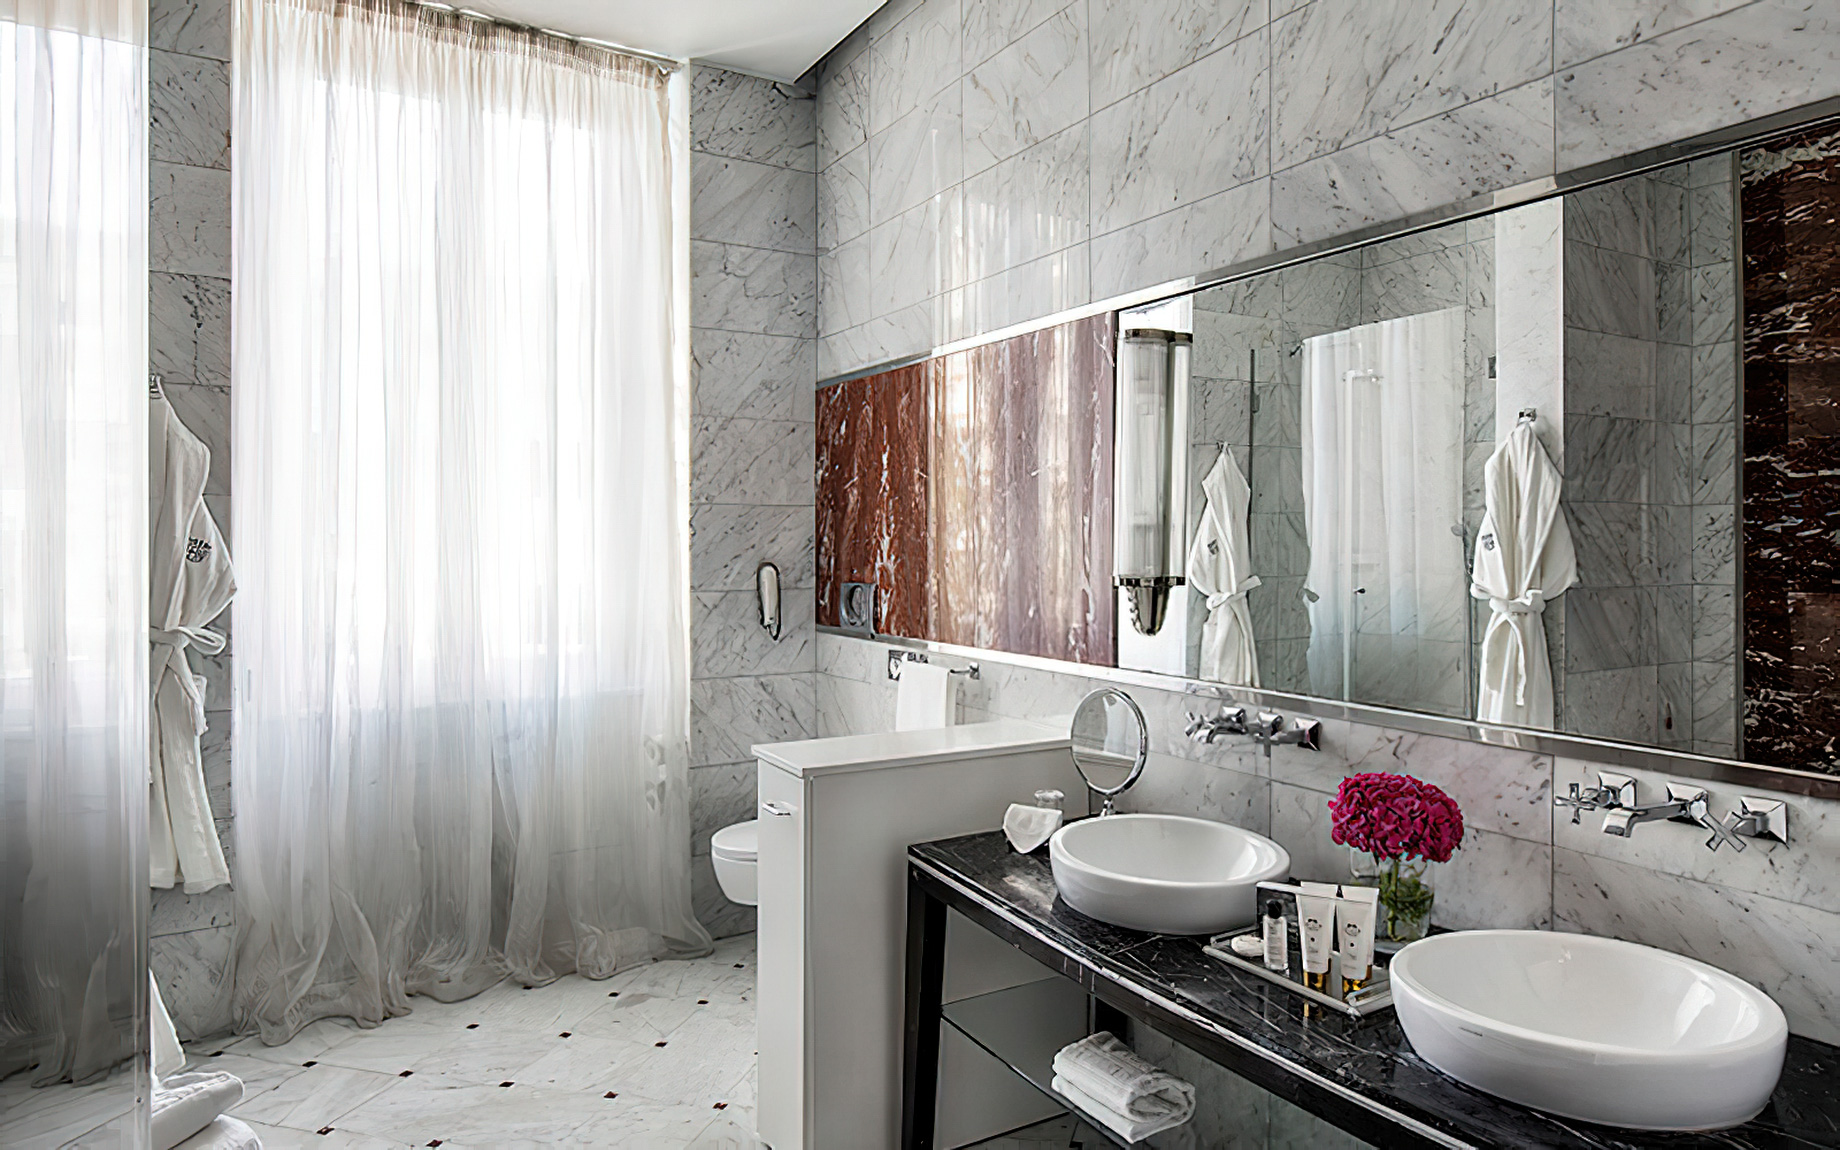 Baglioni Hotel Regina, Roma – Rome, Italy – Dolce Vita Suite Bathroom